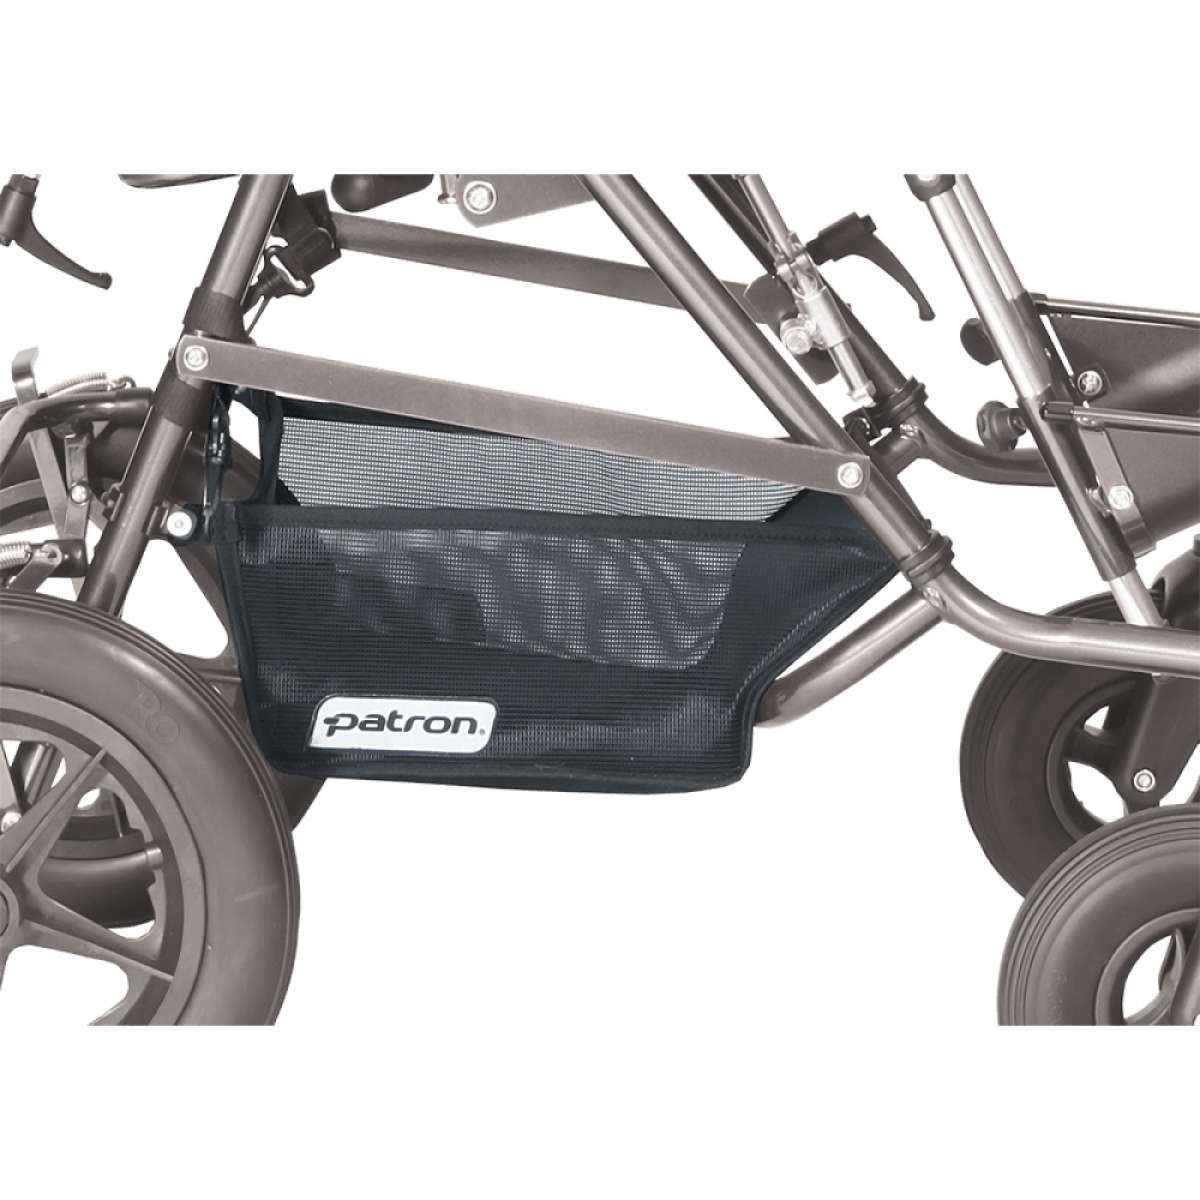 Корзина грузоподъемностью до 3 кг для колясок Patron Rprk02106 